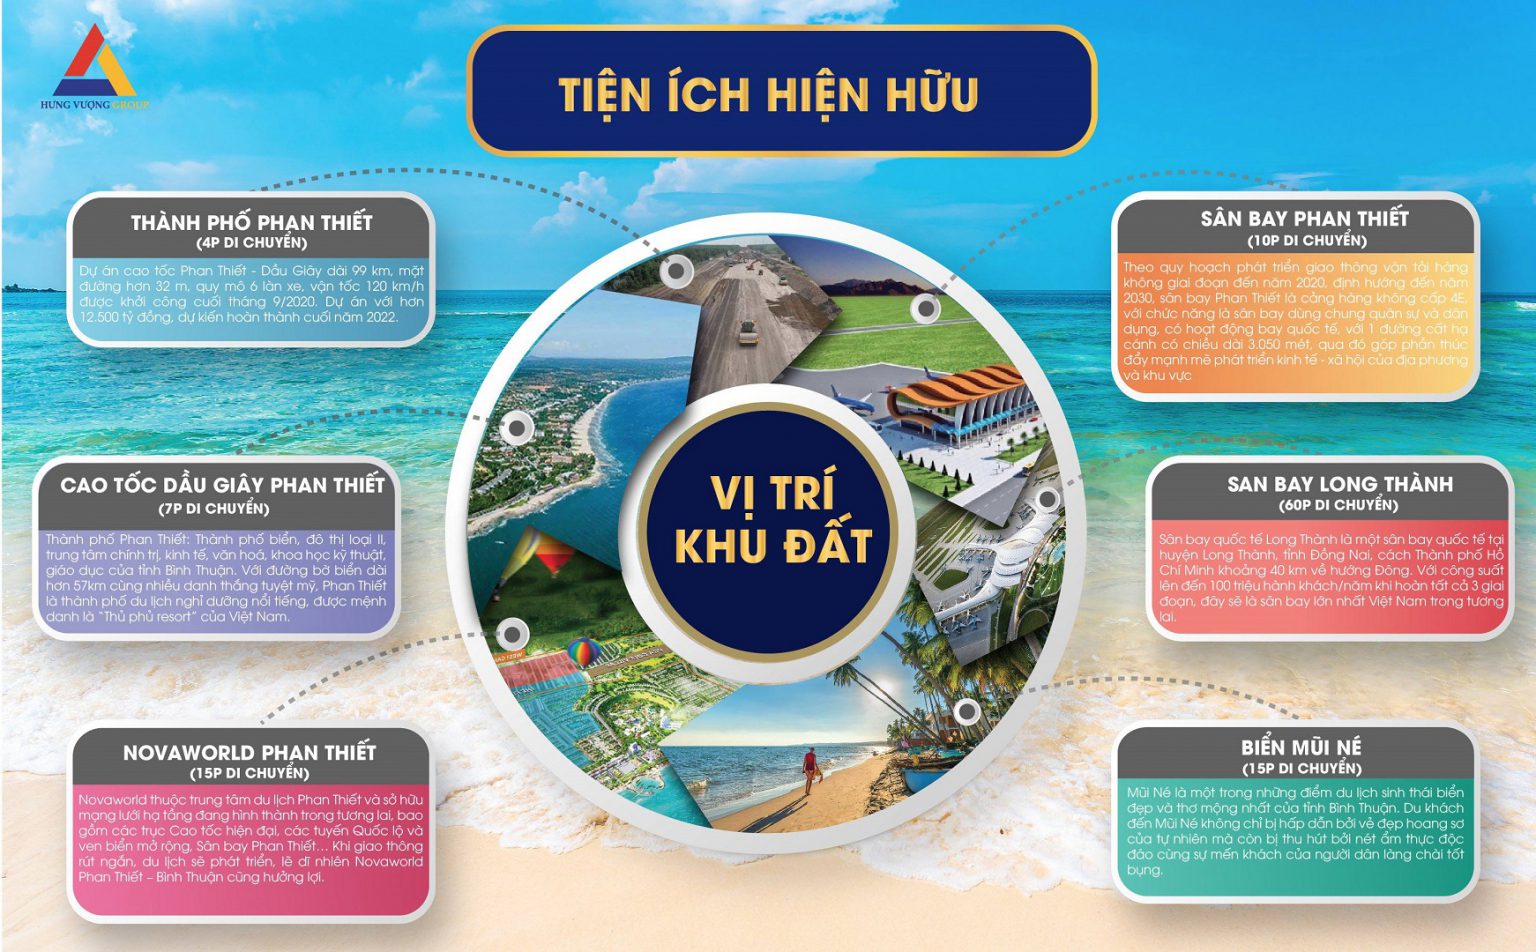 Nam An Eco Town Phan Thiết Bình Thuận